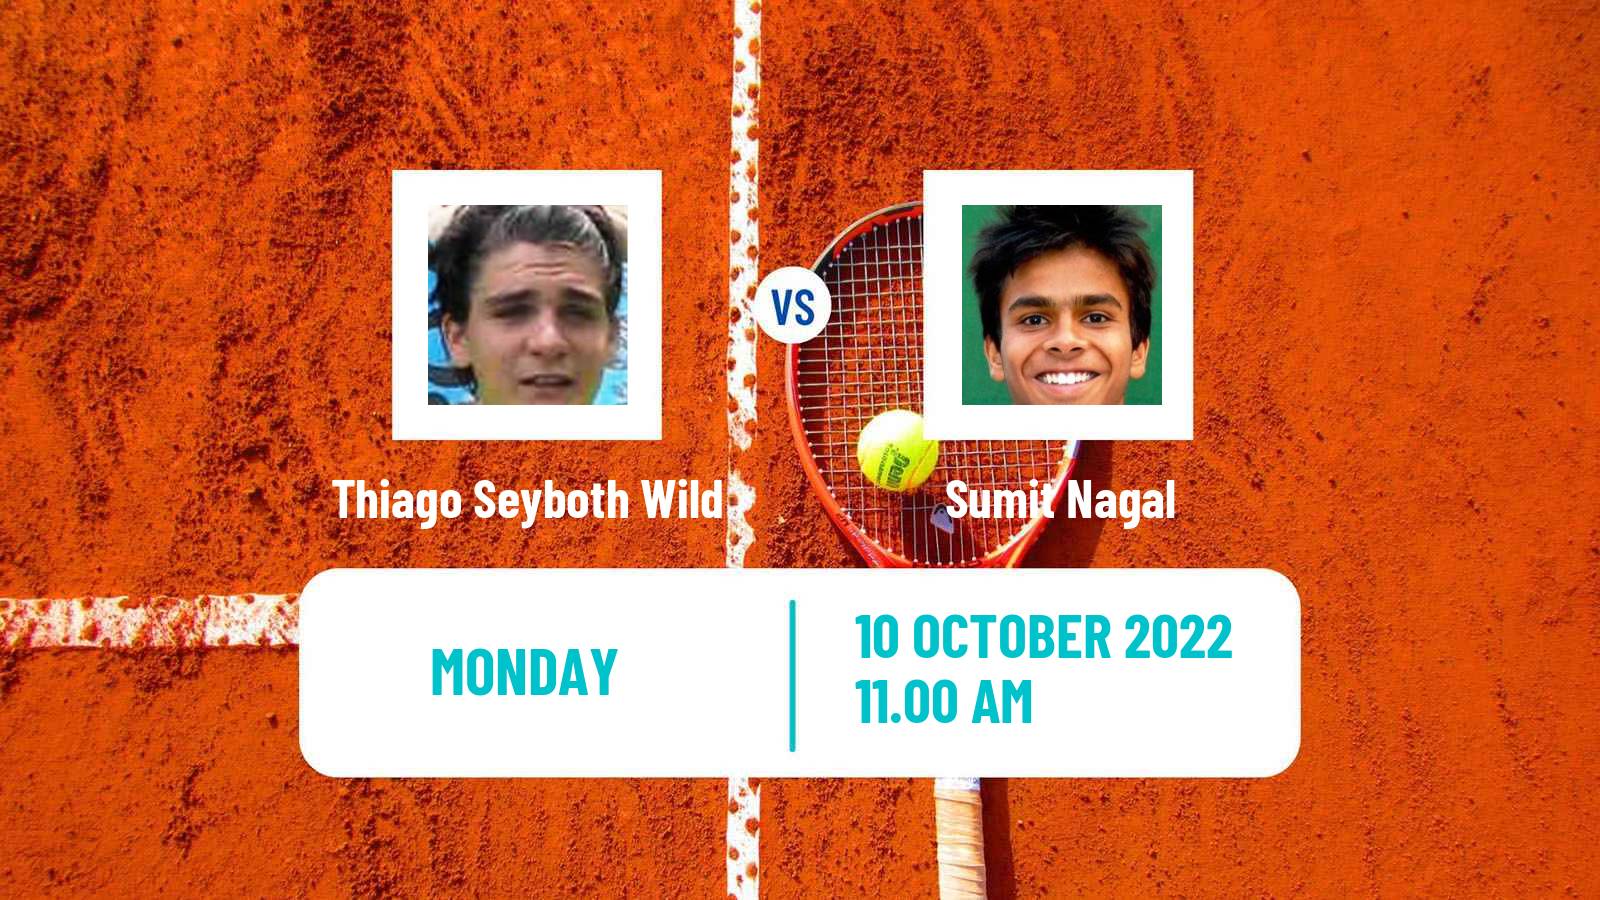 Tennis ATP Challenger Thiago Seyboth Wild - Sumit Nagal